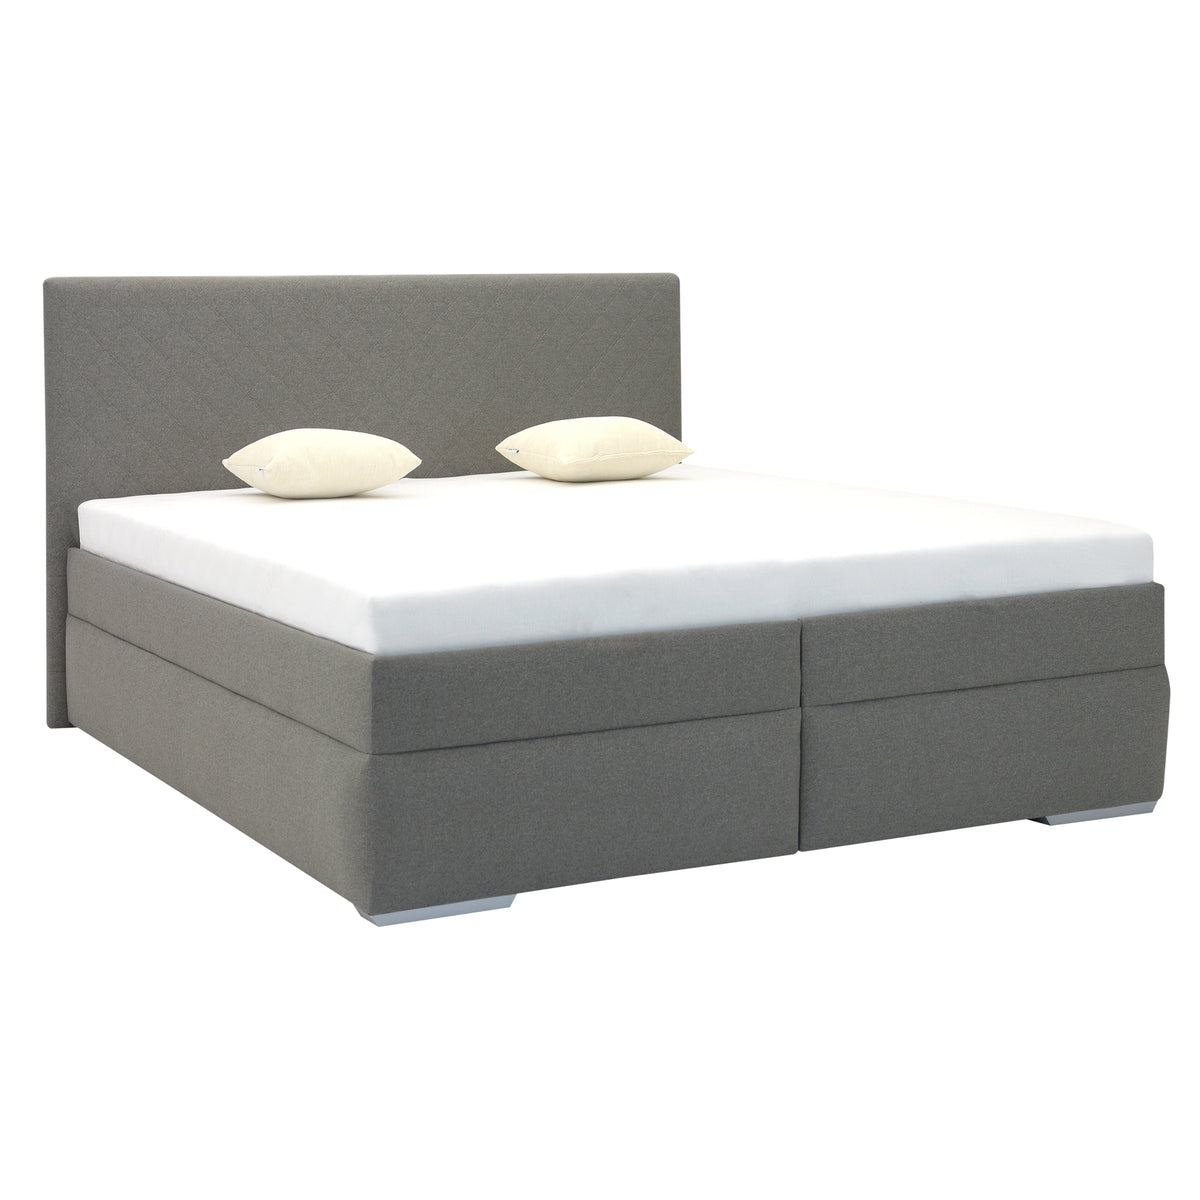 Čalúnená posteľ Dory 160x200, sivá, vr. matraca, bočný výklop